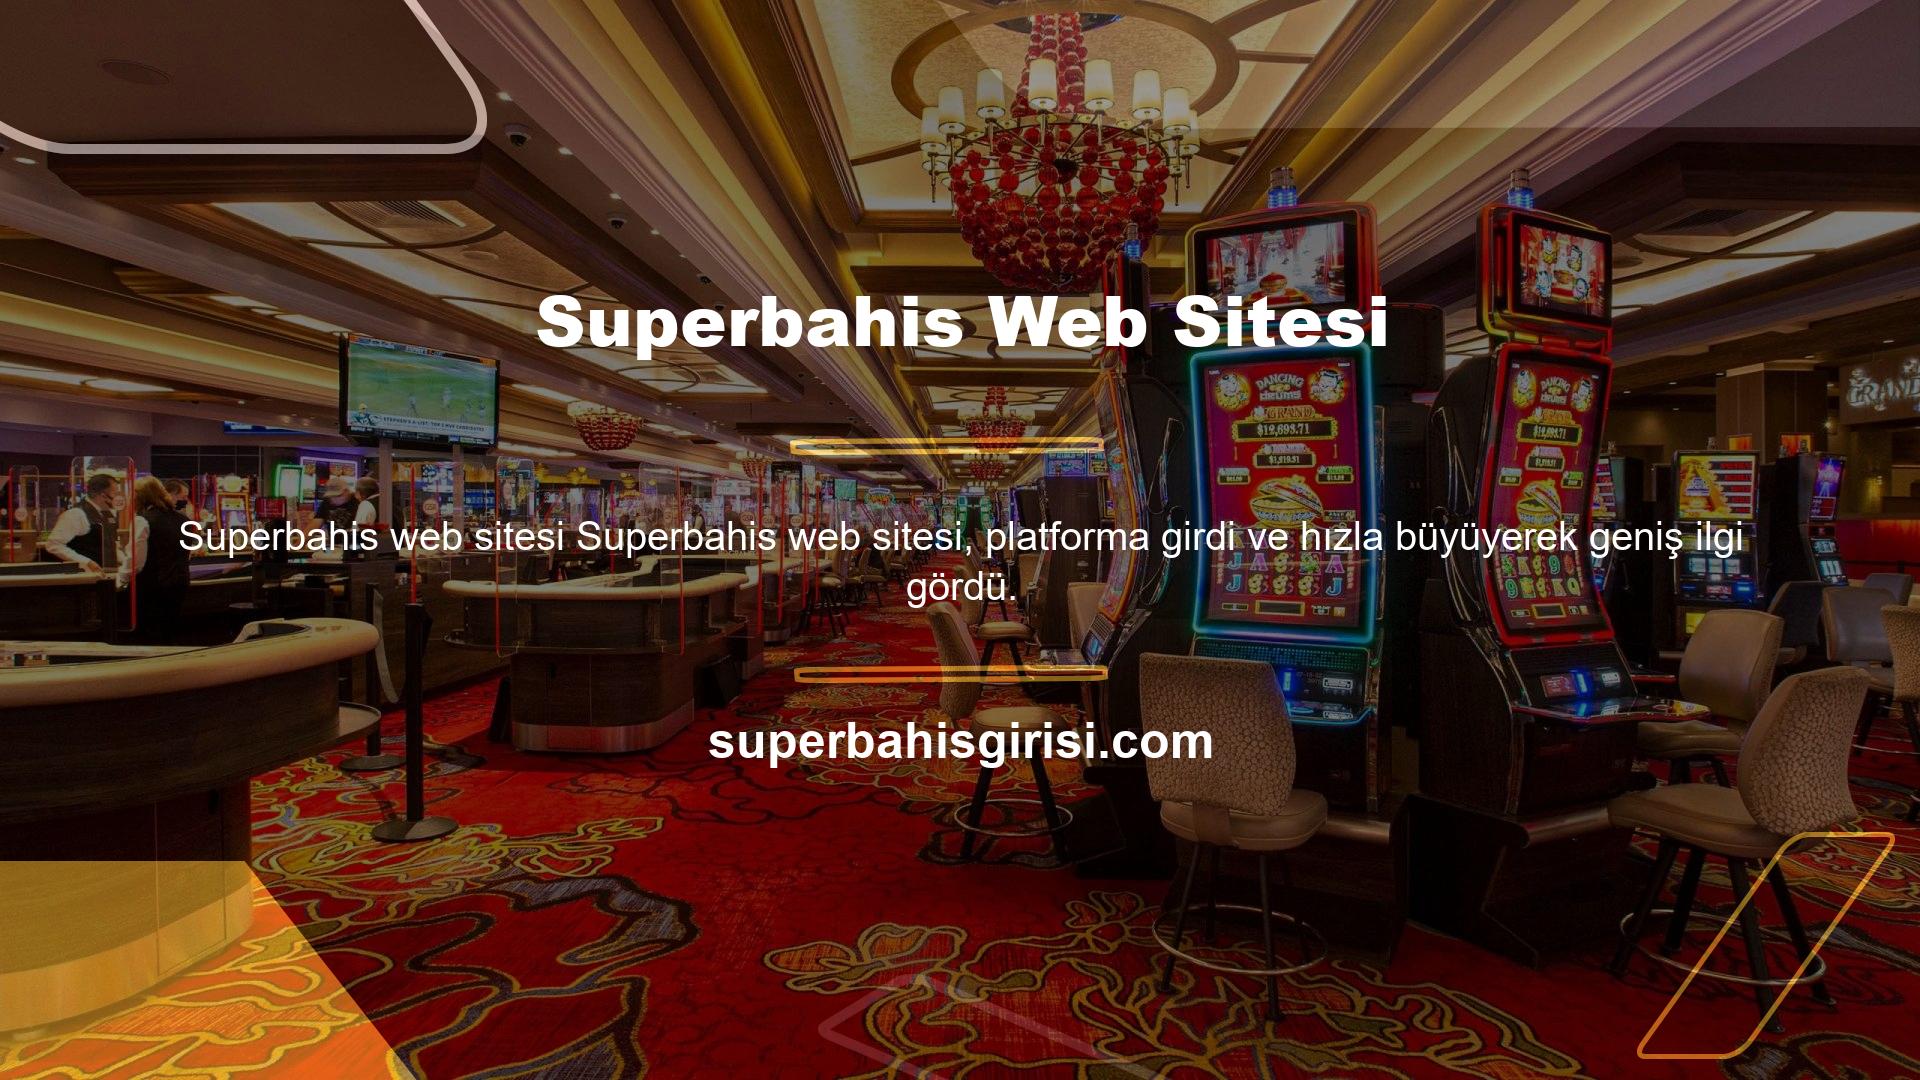 Gelişmiş ve profesyonel teknik altyapı, Superbahis web sitesi için daha uygun tanıtım fırsatları sağlar